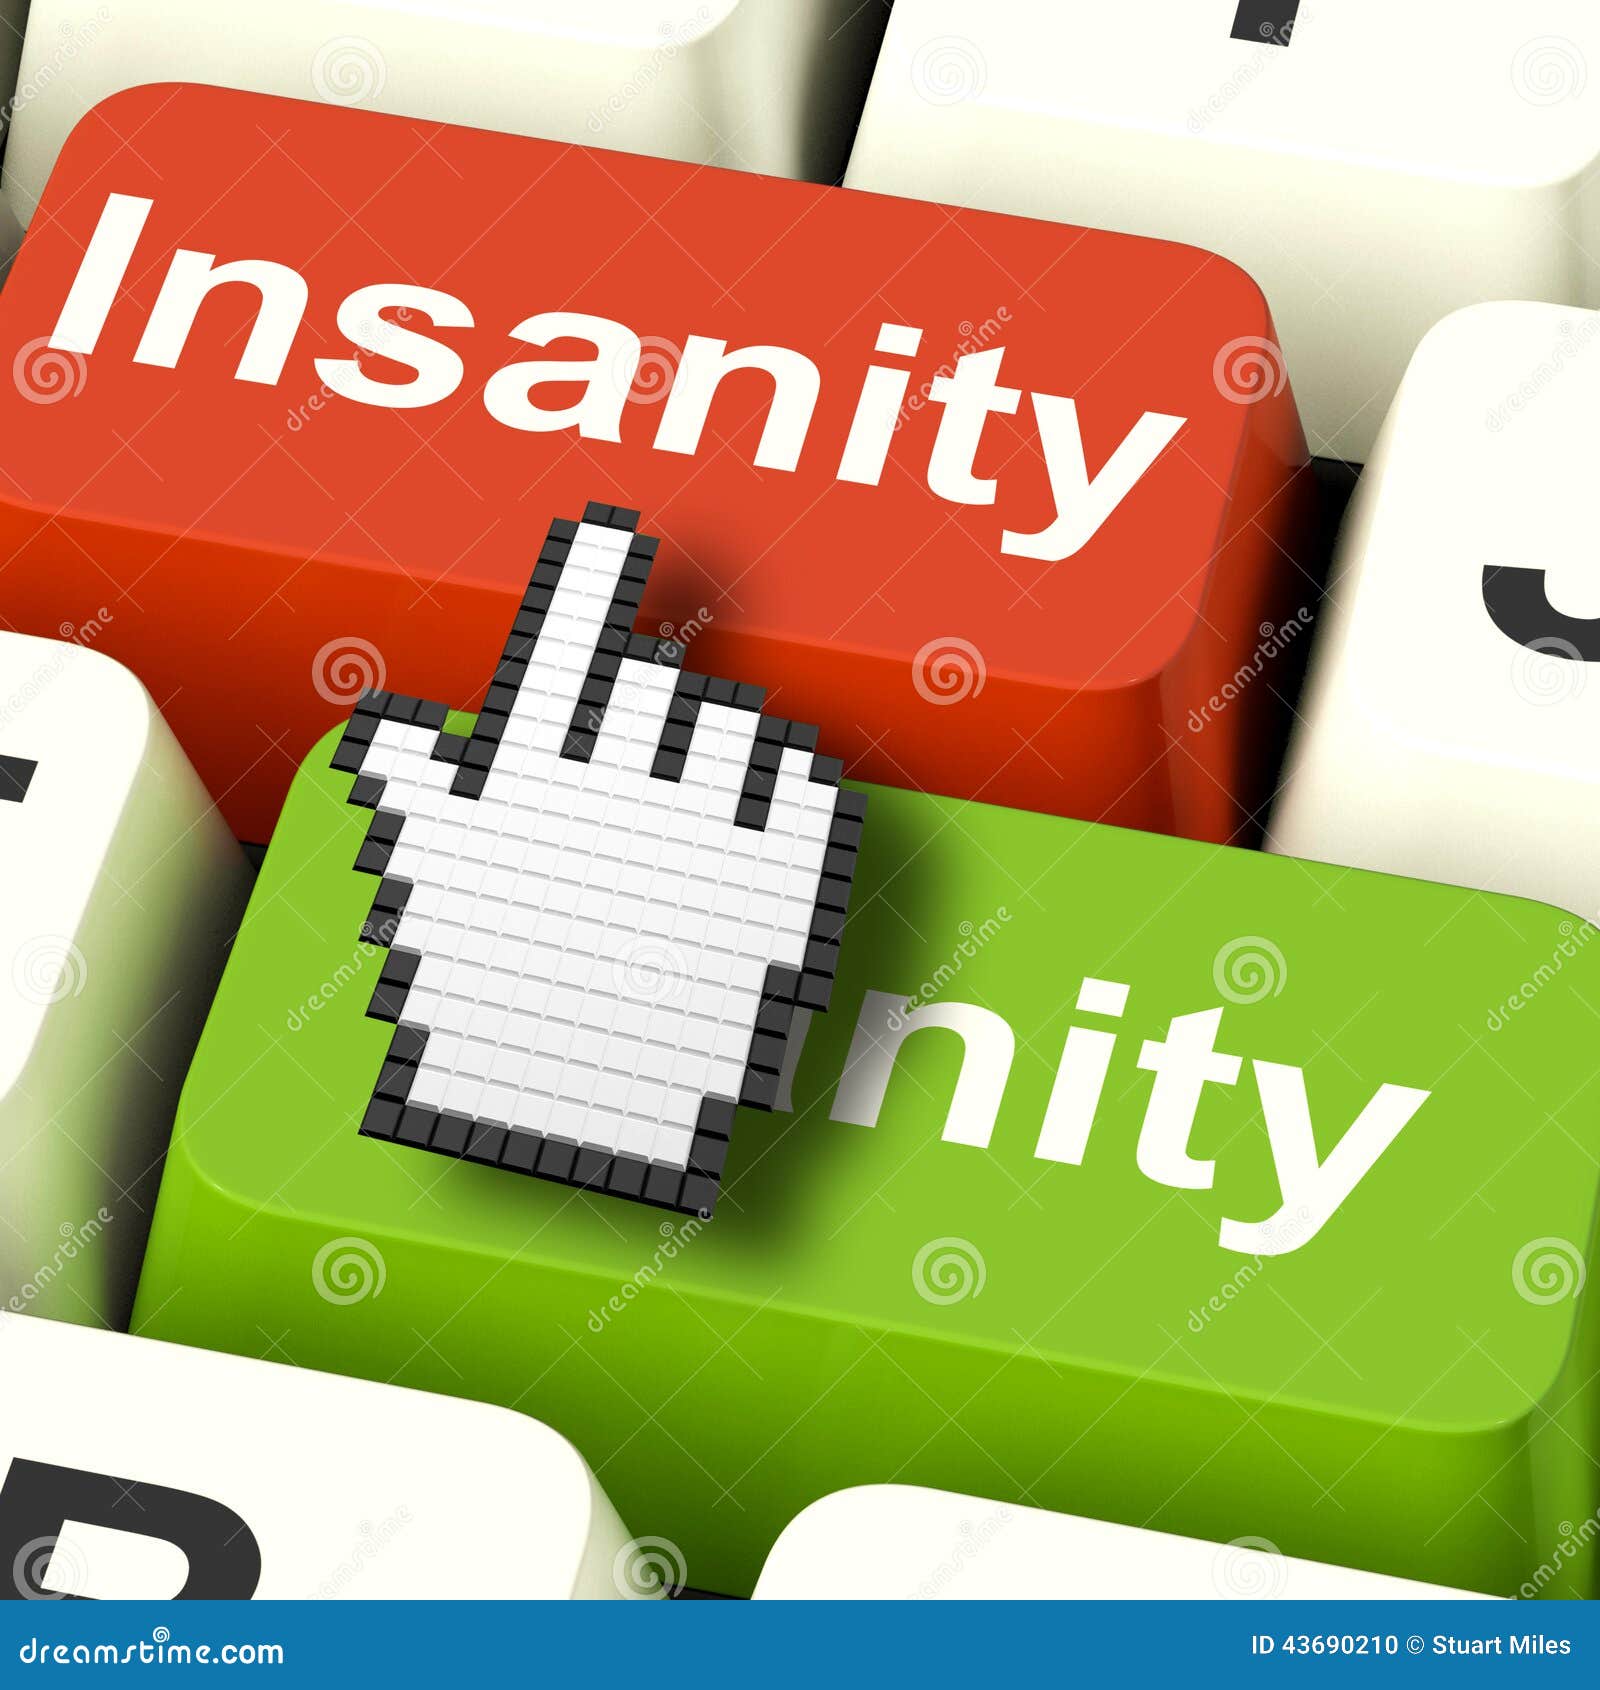 insanity sanity keys shows sane and insane psychology